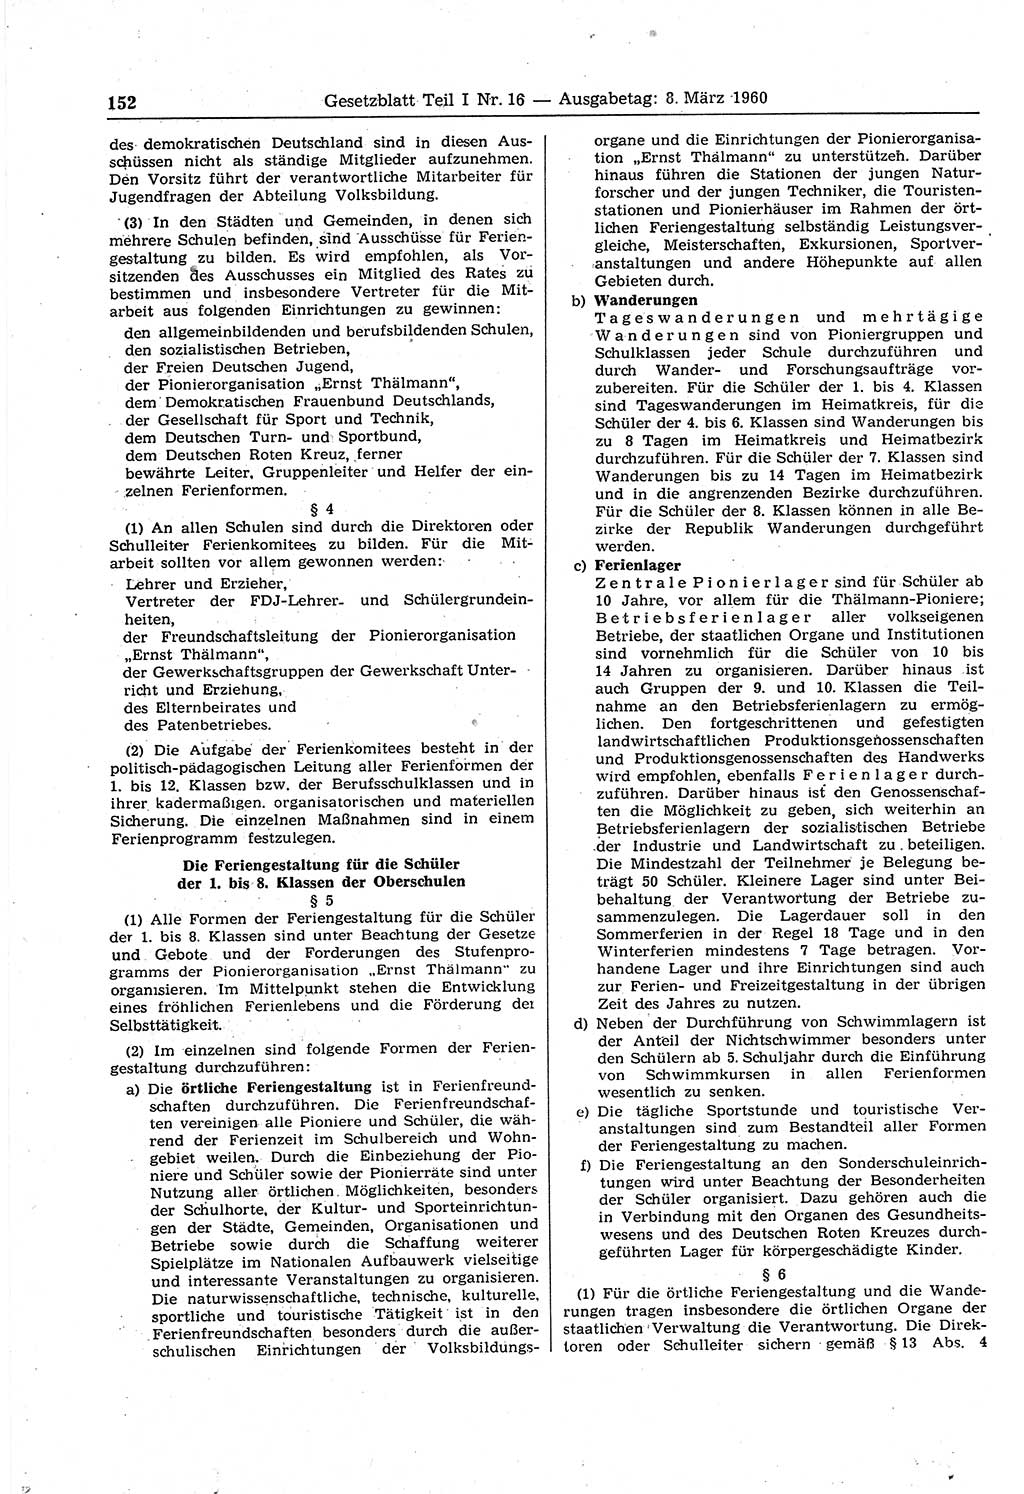 Gesetzblatt (GBl.) der Deutschen Demokratischen Republik (DDR) Teil Ⅰ 1960, Seite 152 (GBl. DDR Ⅰ 1960, S. 152)